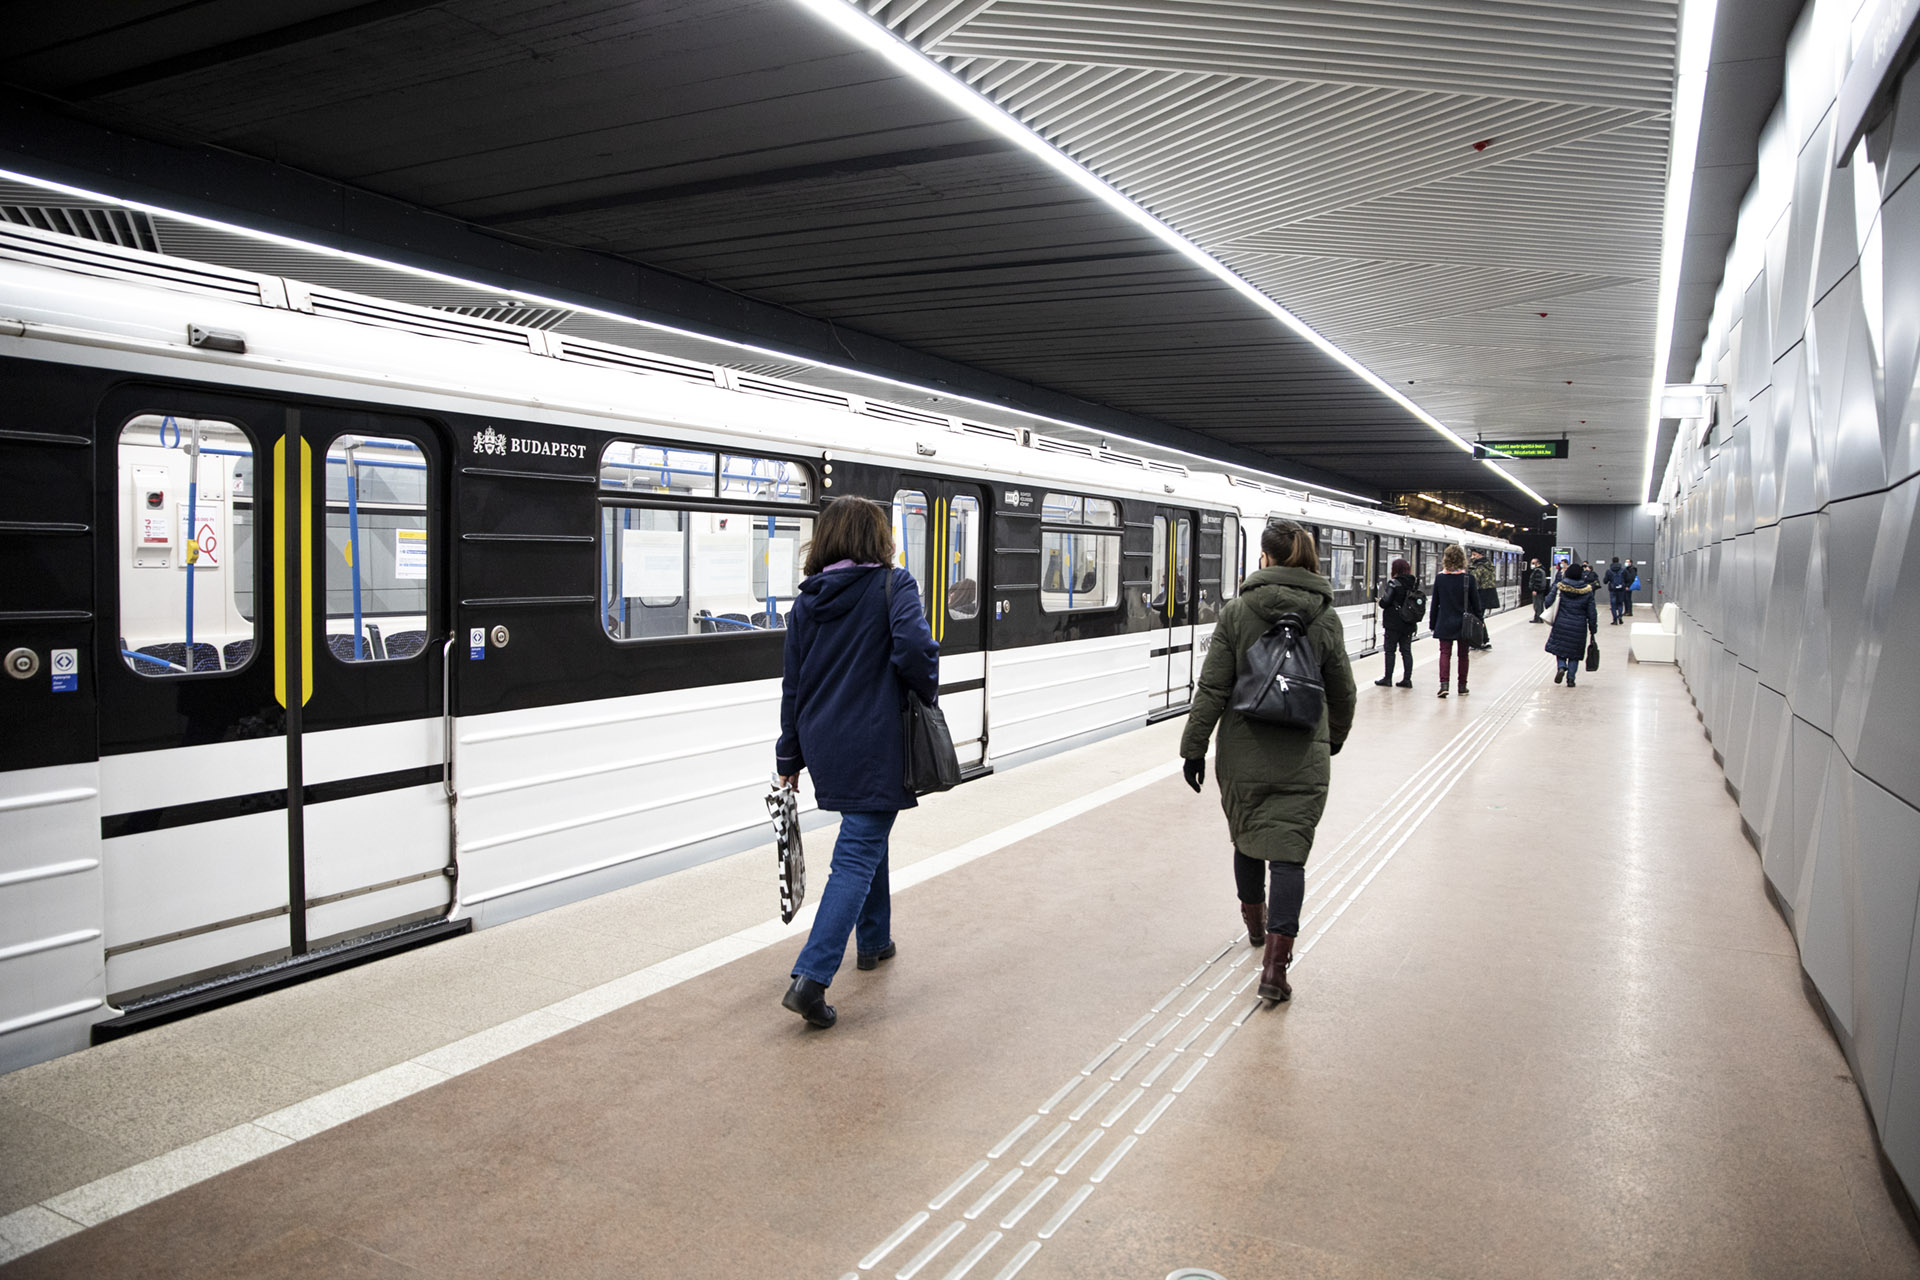 A 3-as metrón rekedtek az utasok, miután annak nem nyílt ki az ajtaja a végállomáson